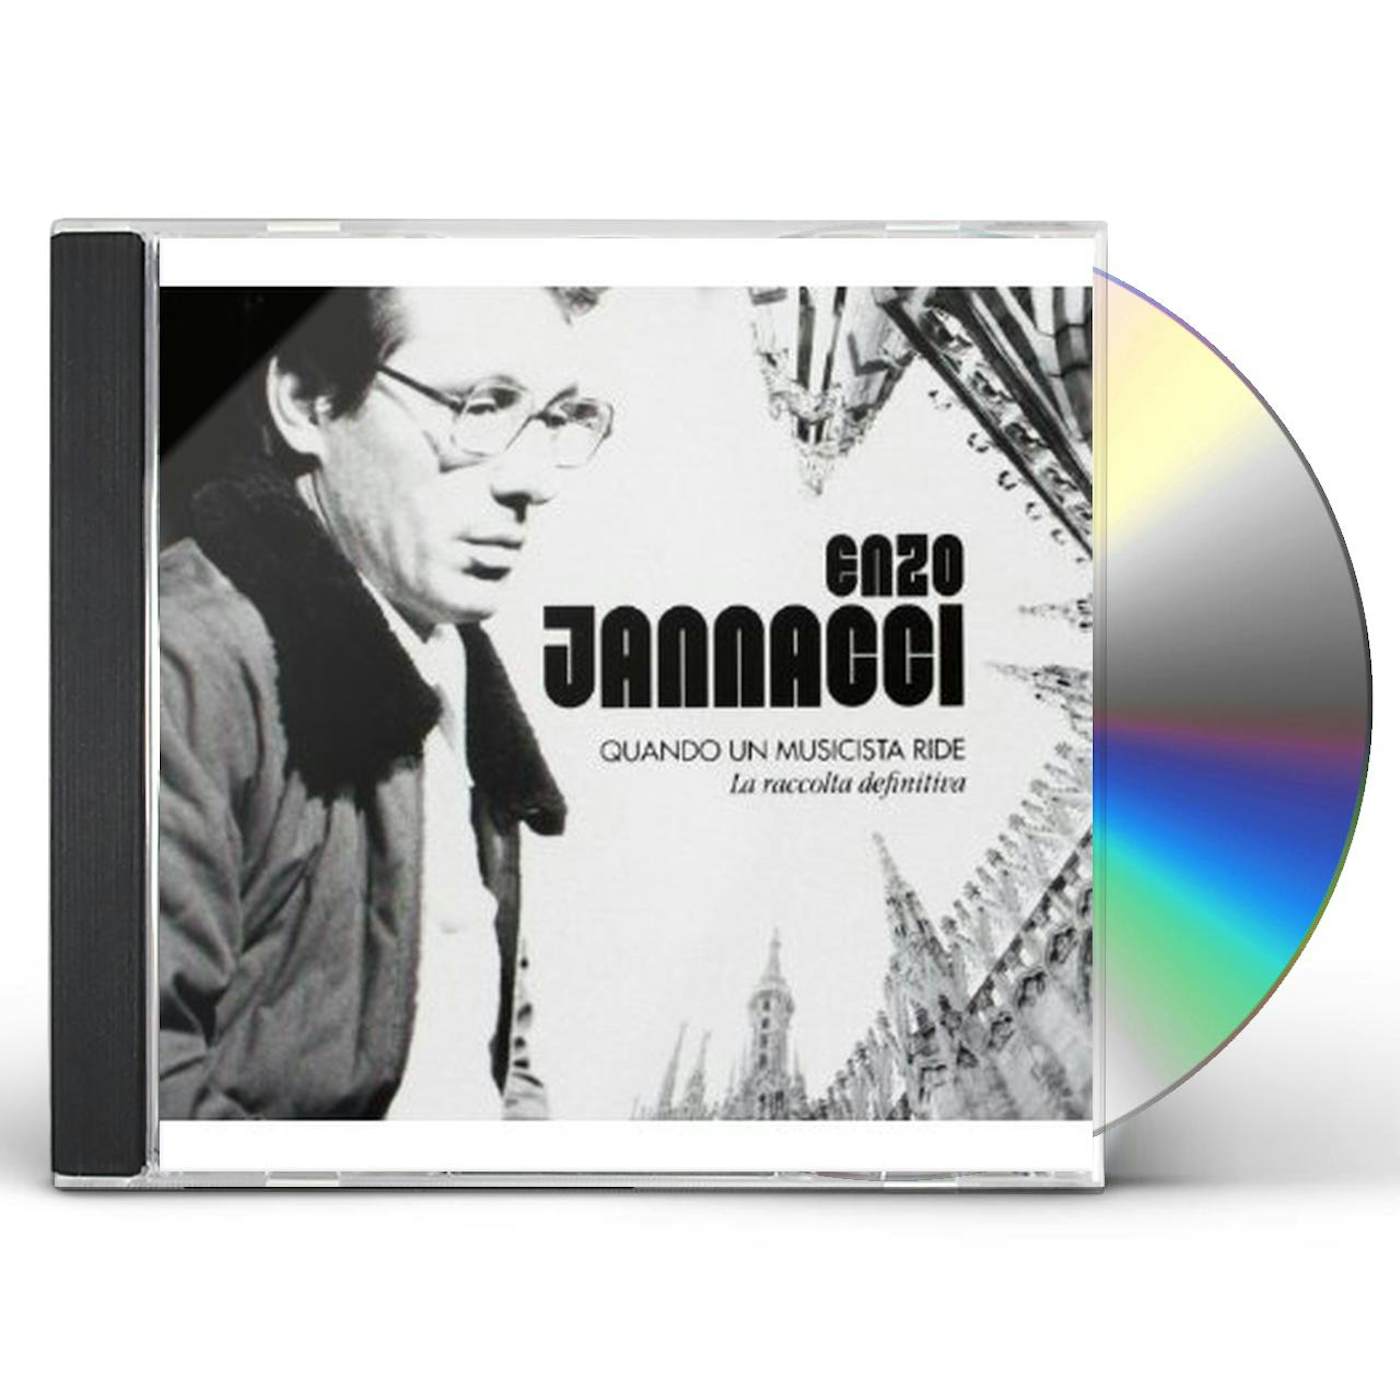 Enzo Jannacci QUANDO UN MUSICISTA RIDE-LA RACCOLTA DEFINITIVA CD